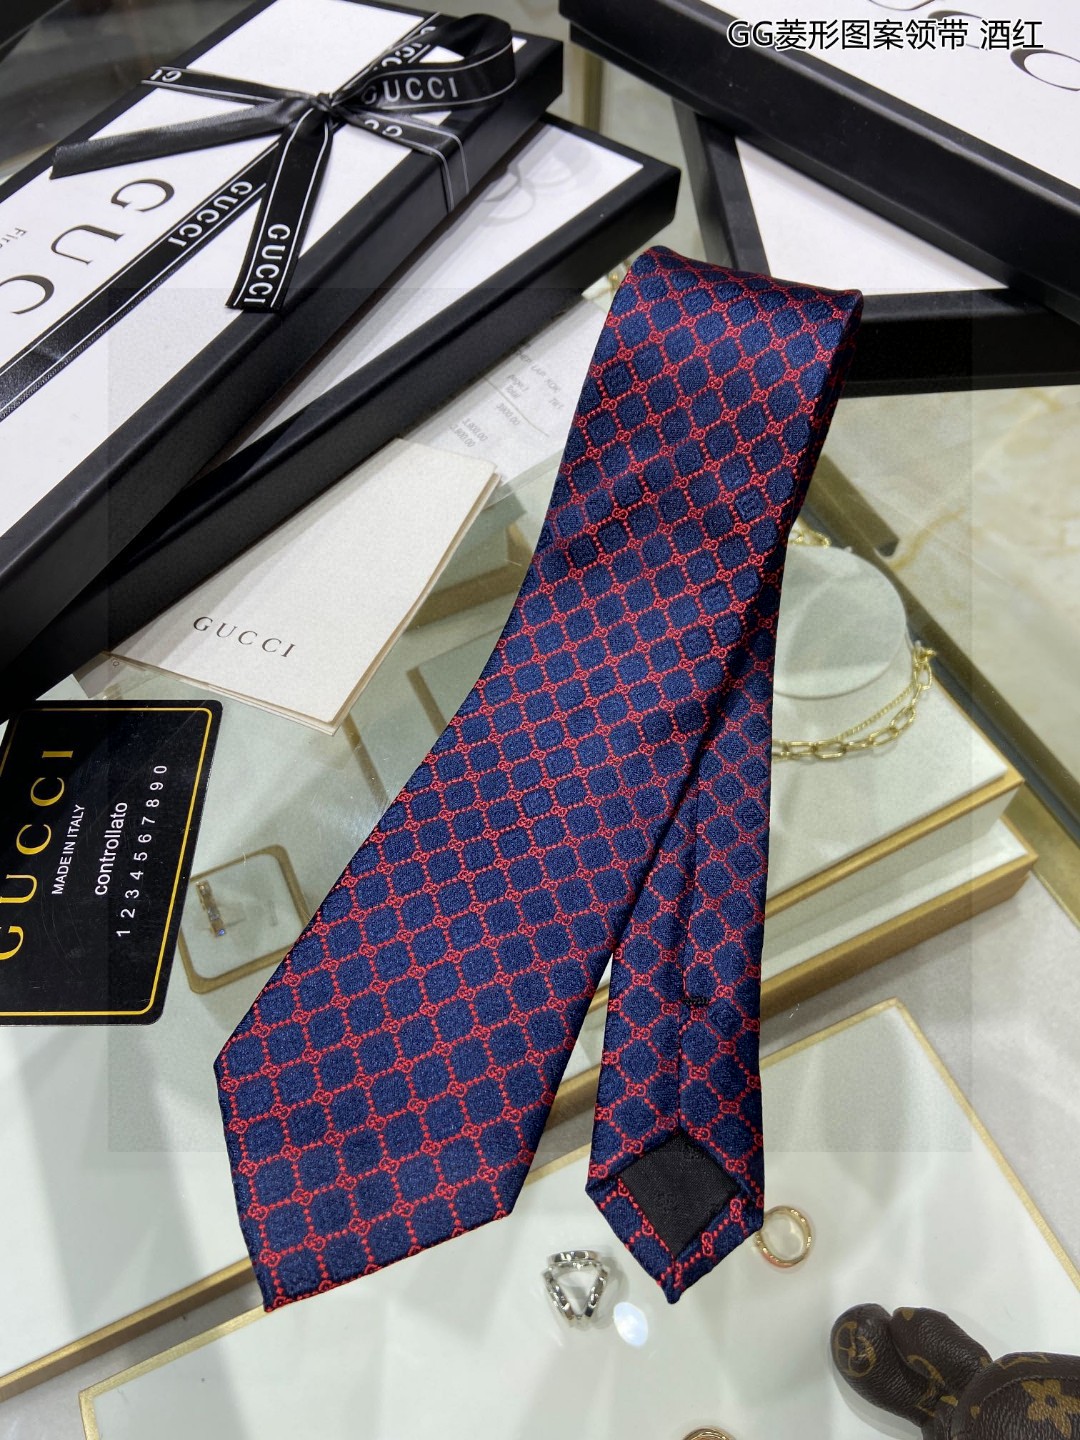 特价G家专柜新款GG菱形图案领带男士领带稀有采用经典小GLOGO提花展现精湛手工与时尚优雅的理想选择这款